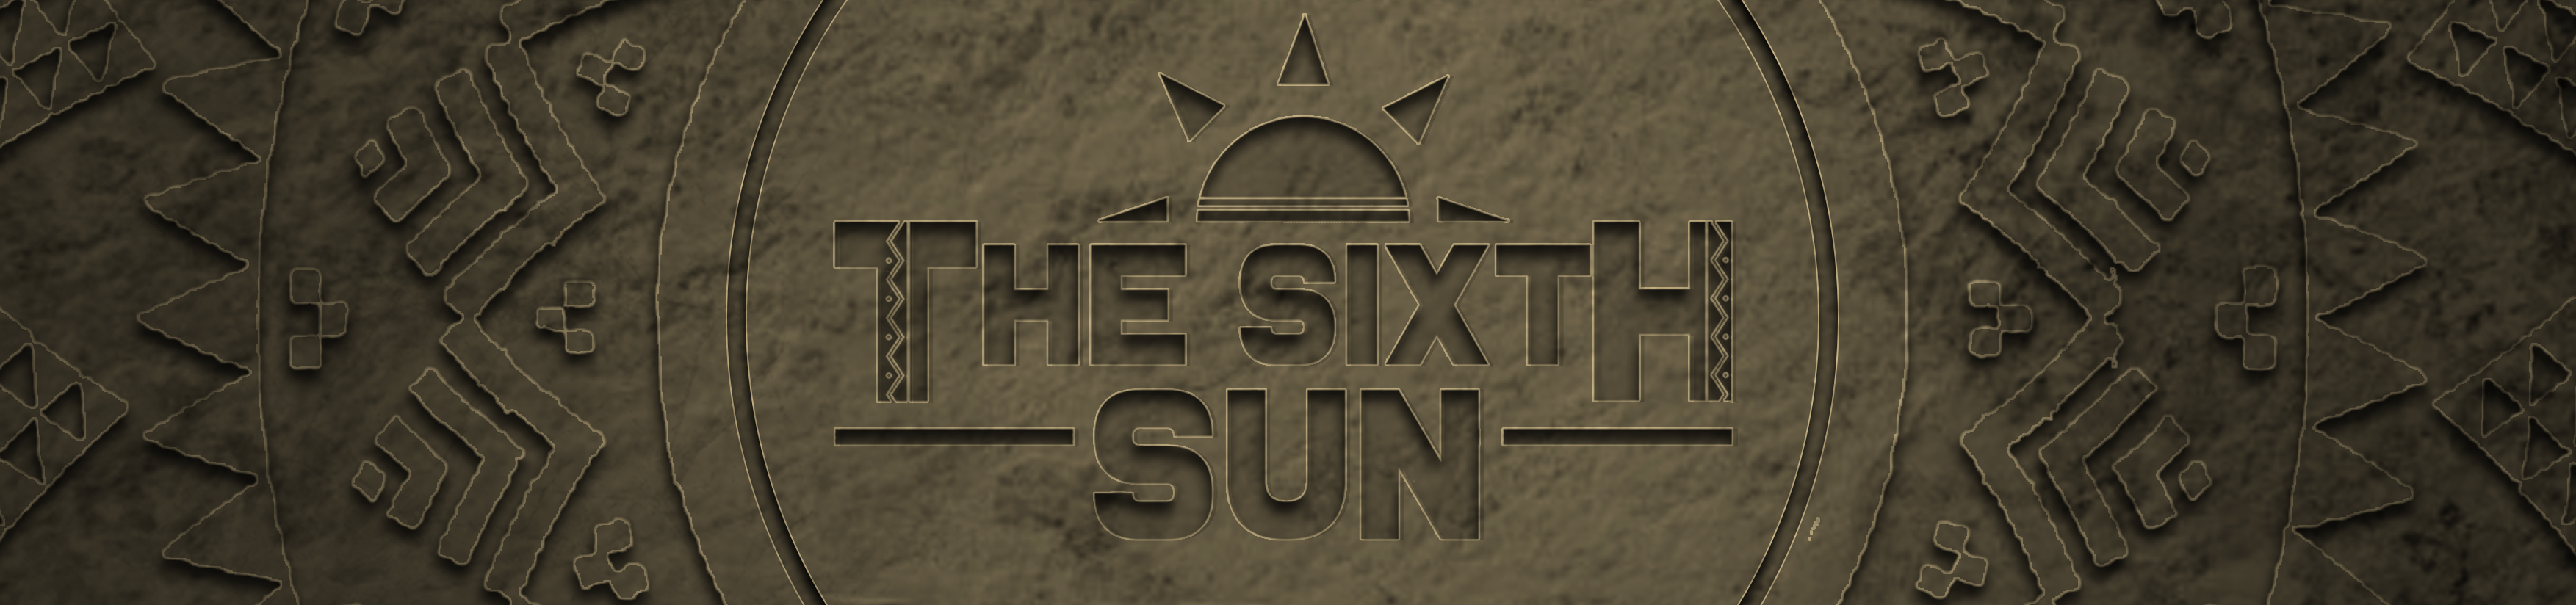 The Sixth Sun banner